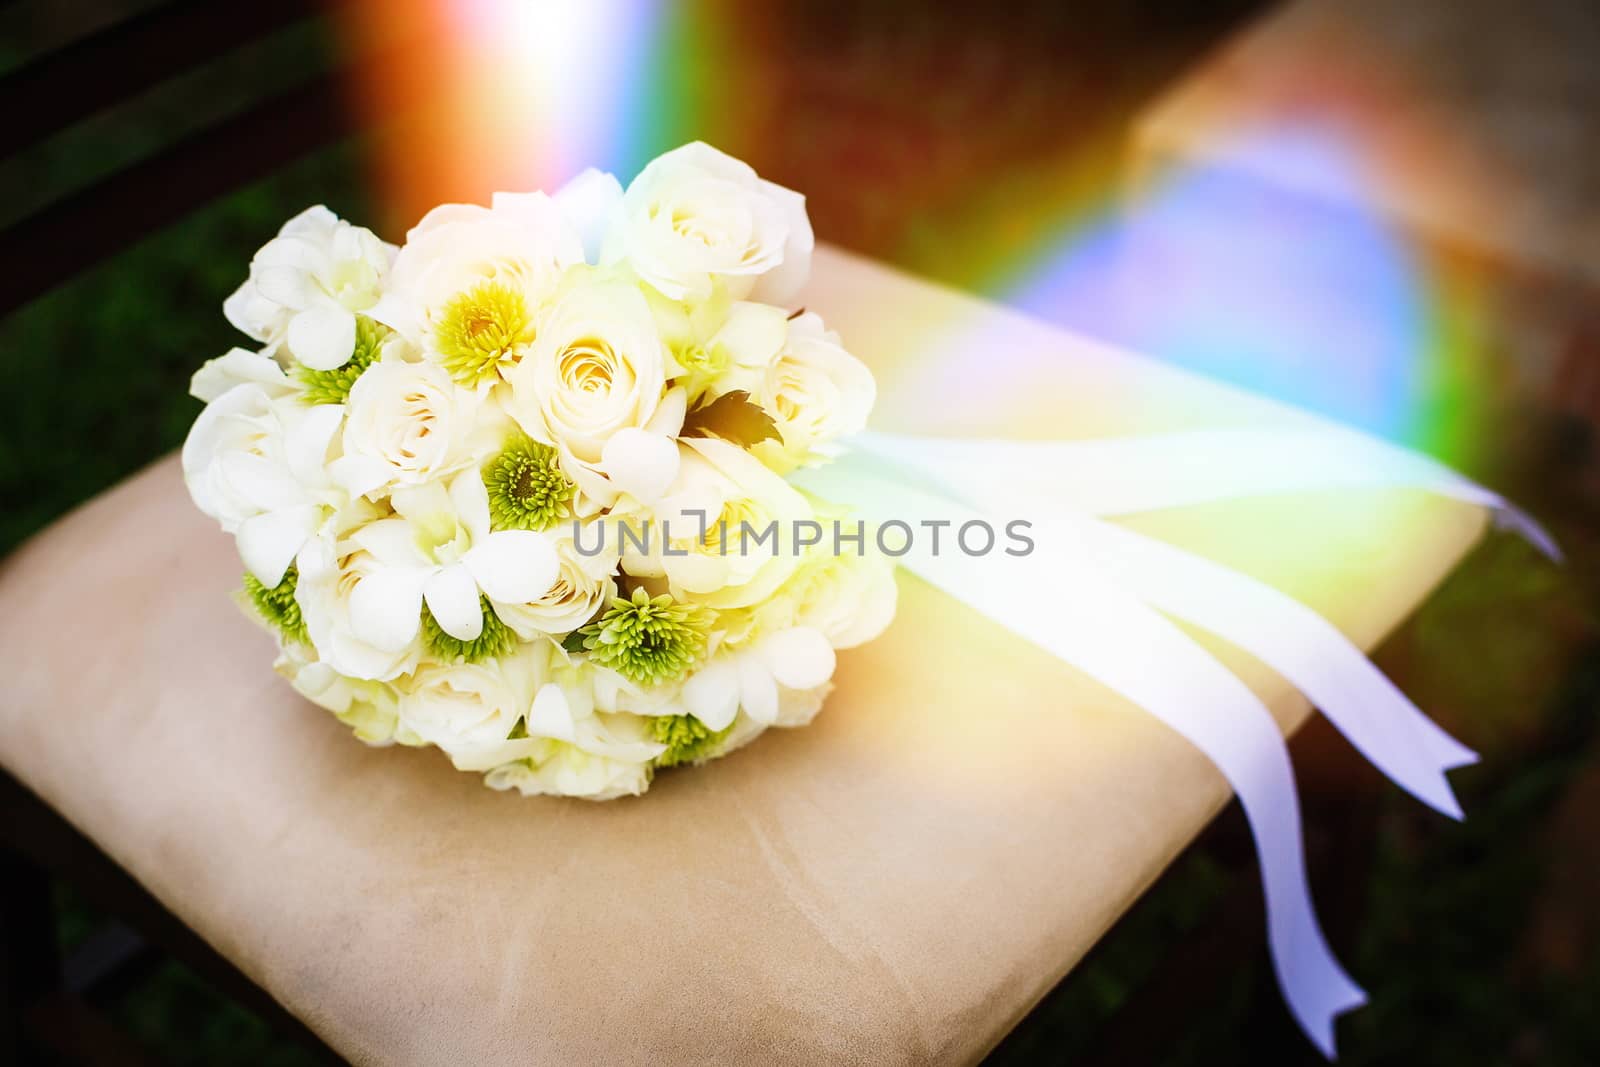 Wedding flower bouquet by gorov108